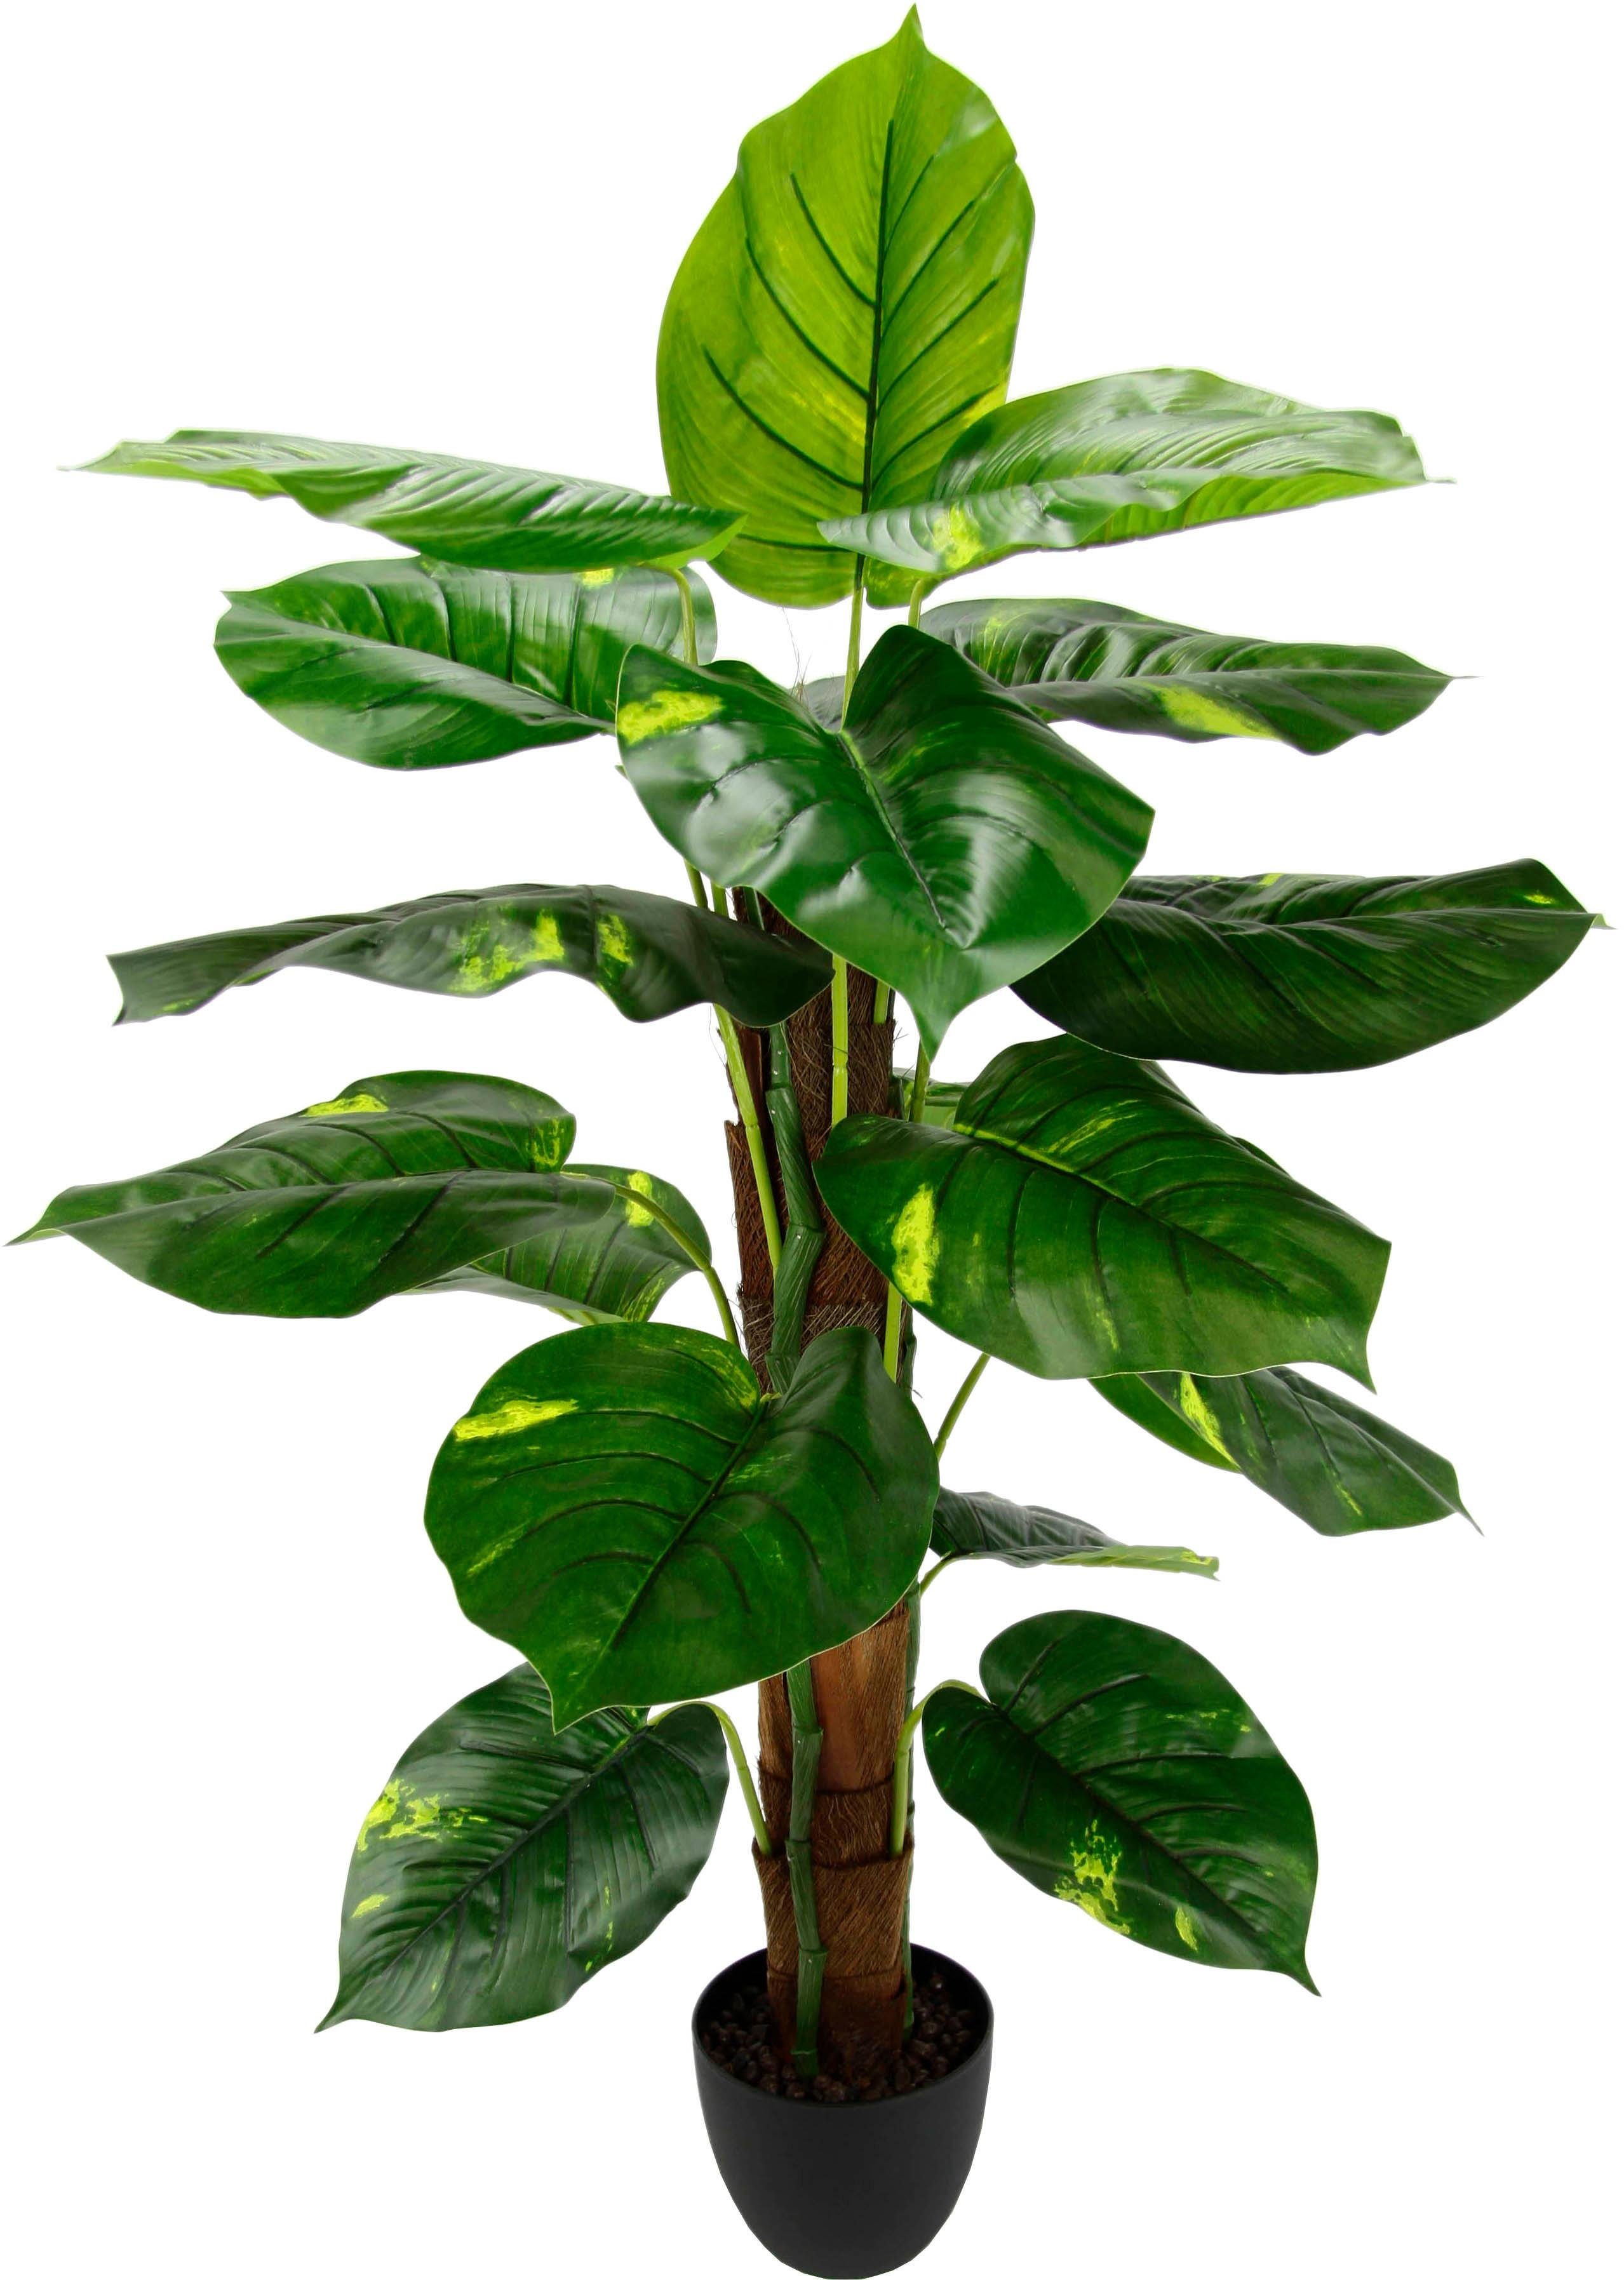 Pothospflanze, Kunstpflanze I.GE.A., 85 Höhe cm